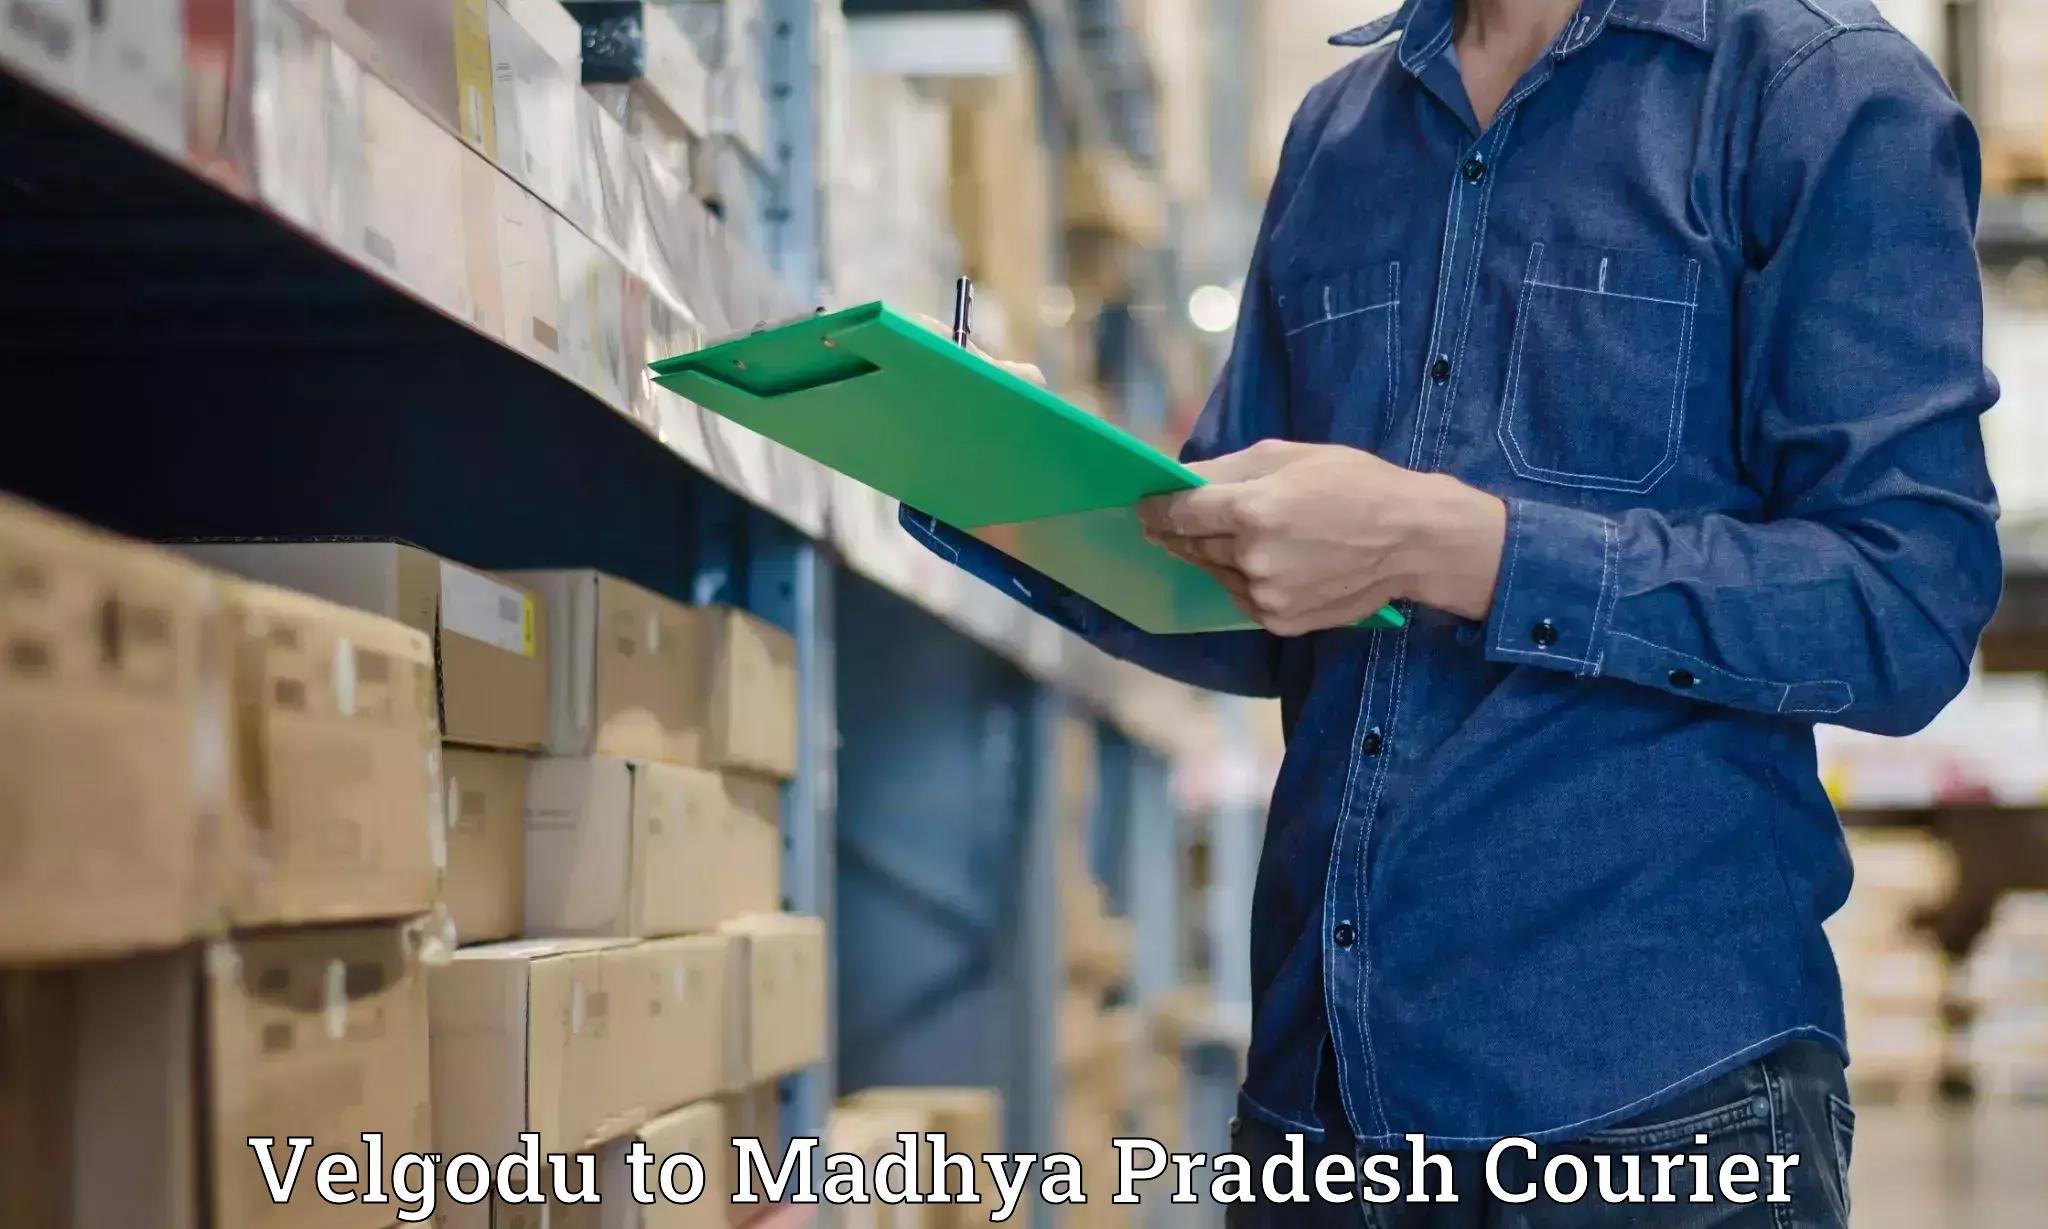 Luggage shipment specialists Velgodu to Madhya Pradesh